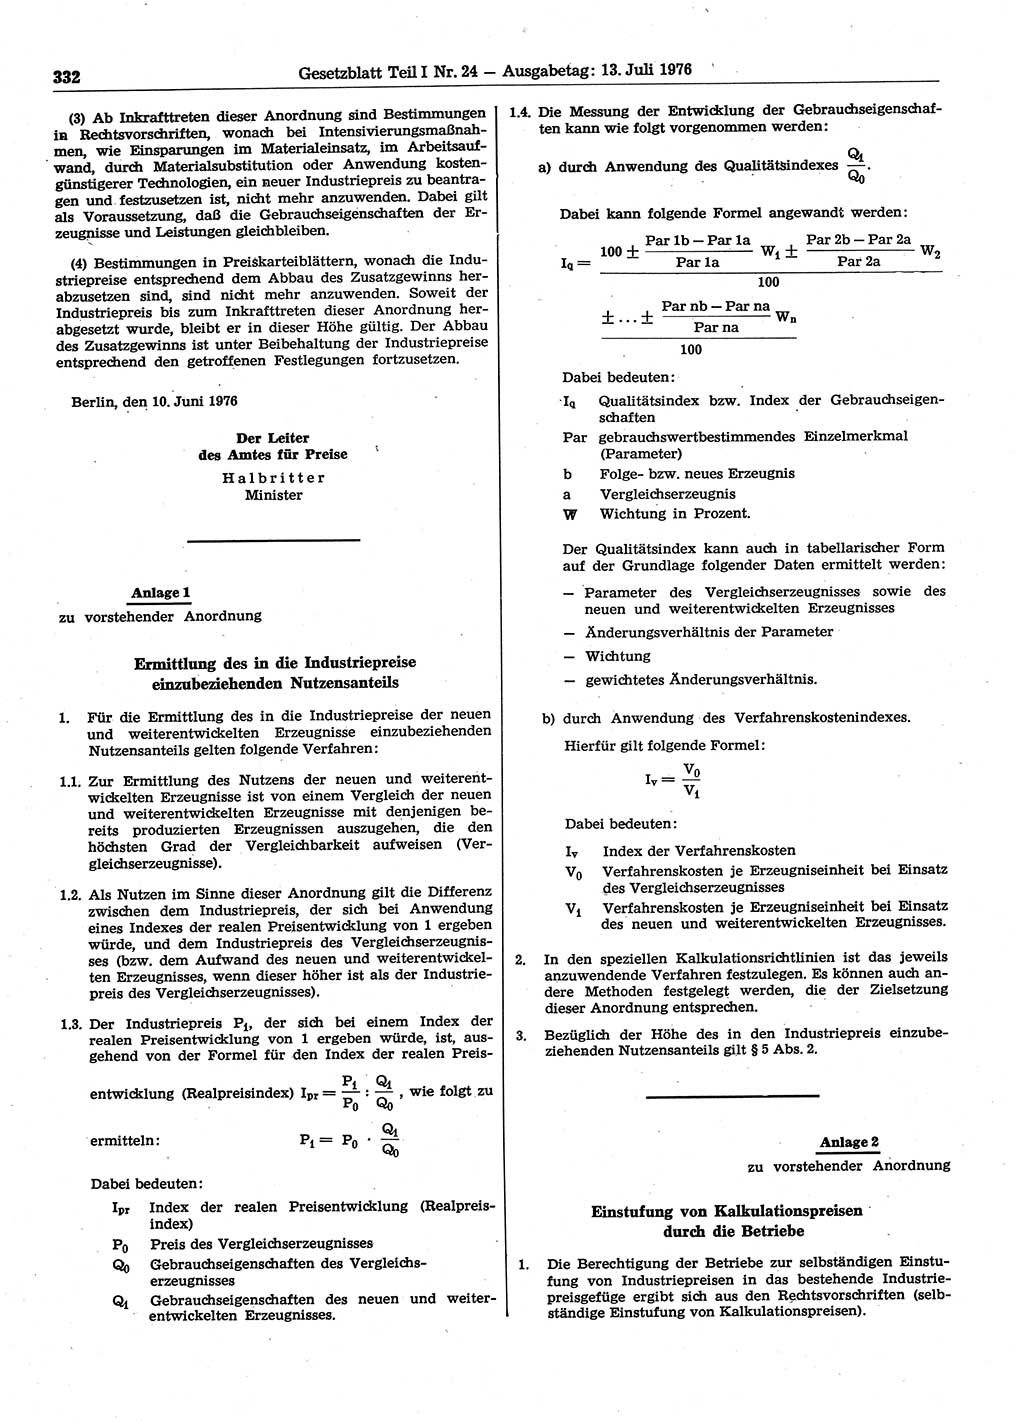 Gesetzblatt (GBl.) der Deutschen Demokratischen Republik (DDR) Teil Ⅰ 1976, Seite 332 (GBl. DDR Ⅰ 1976, S. 332)